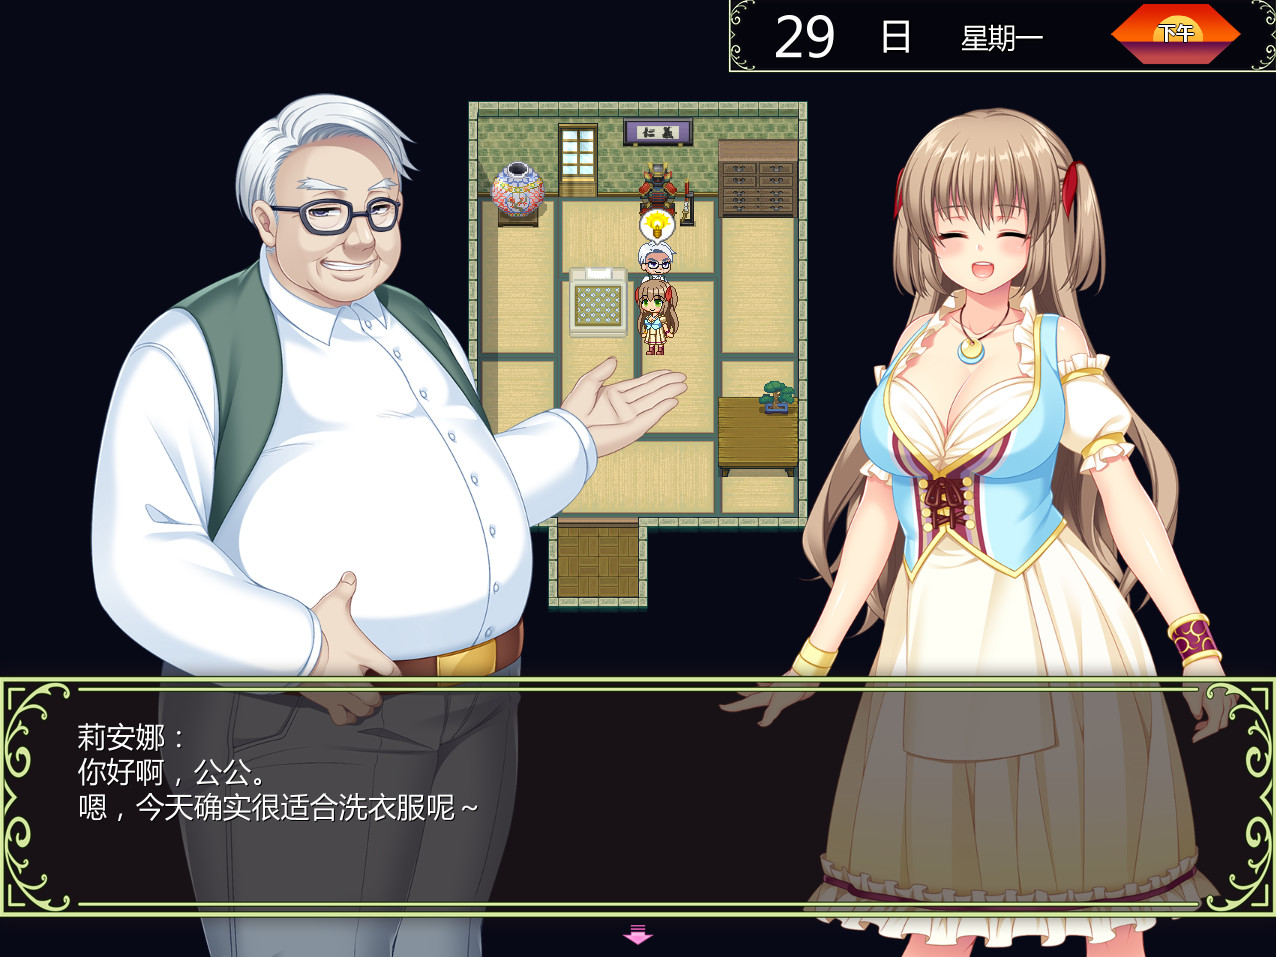 【RPG/中文】打工新妻莉安娜 v1.02 Steam官方中文版【772M】